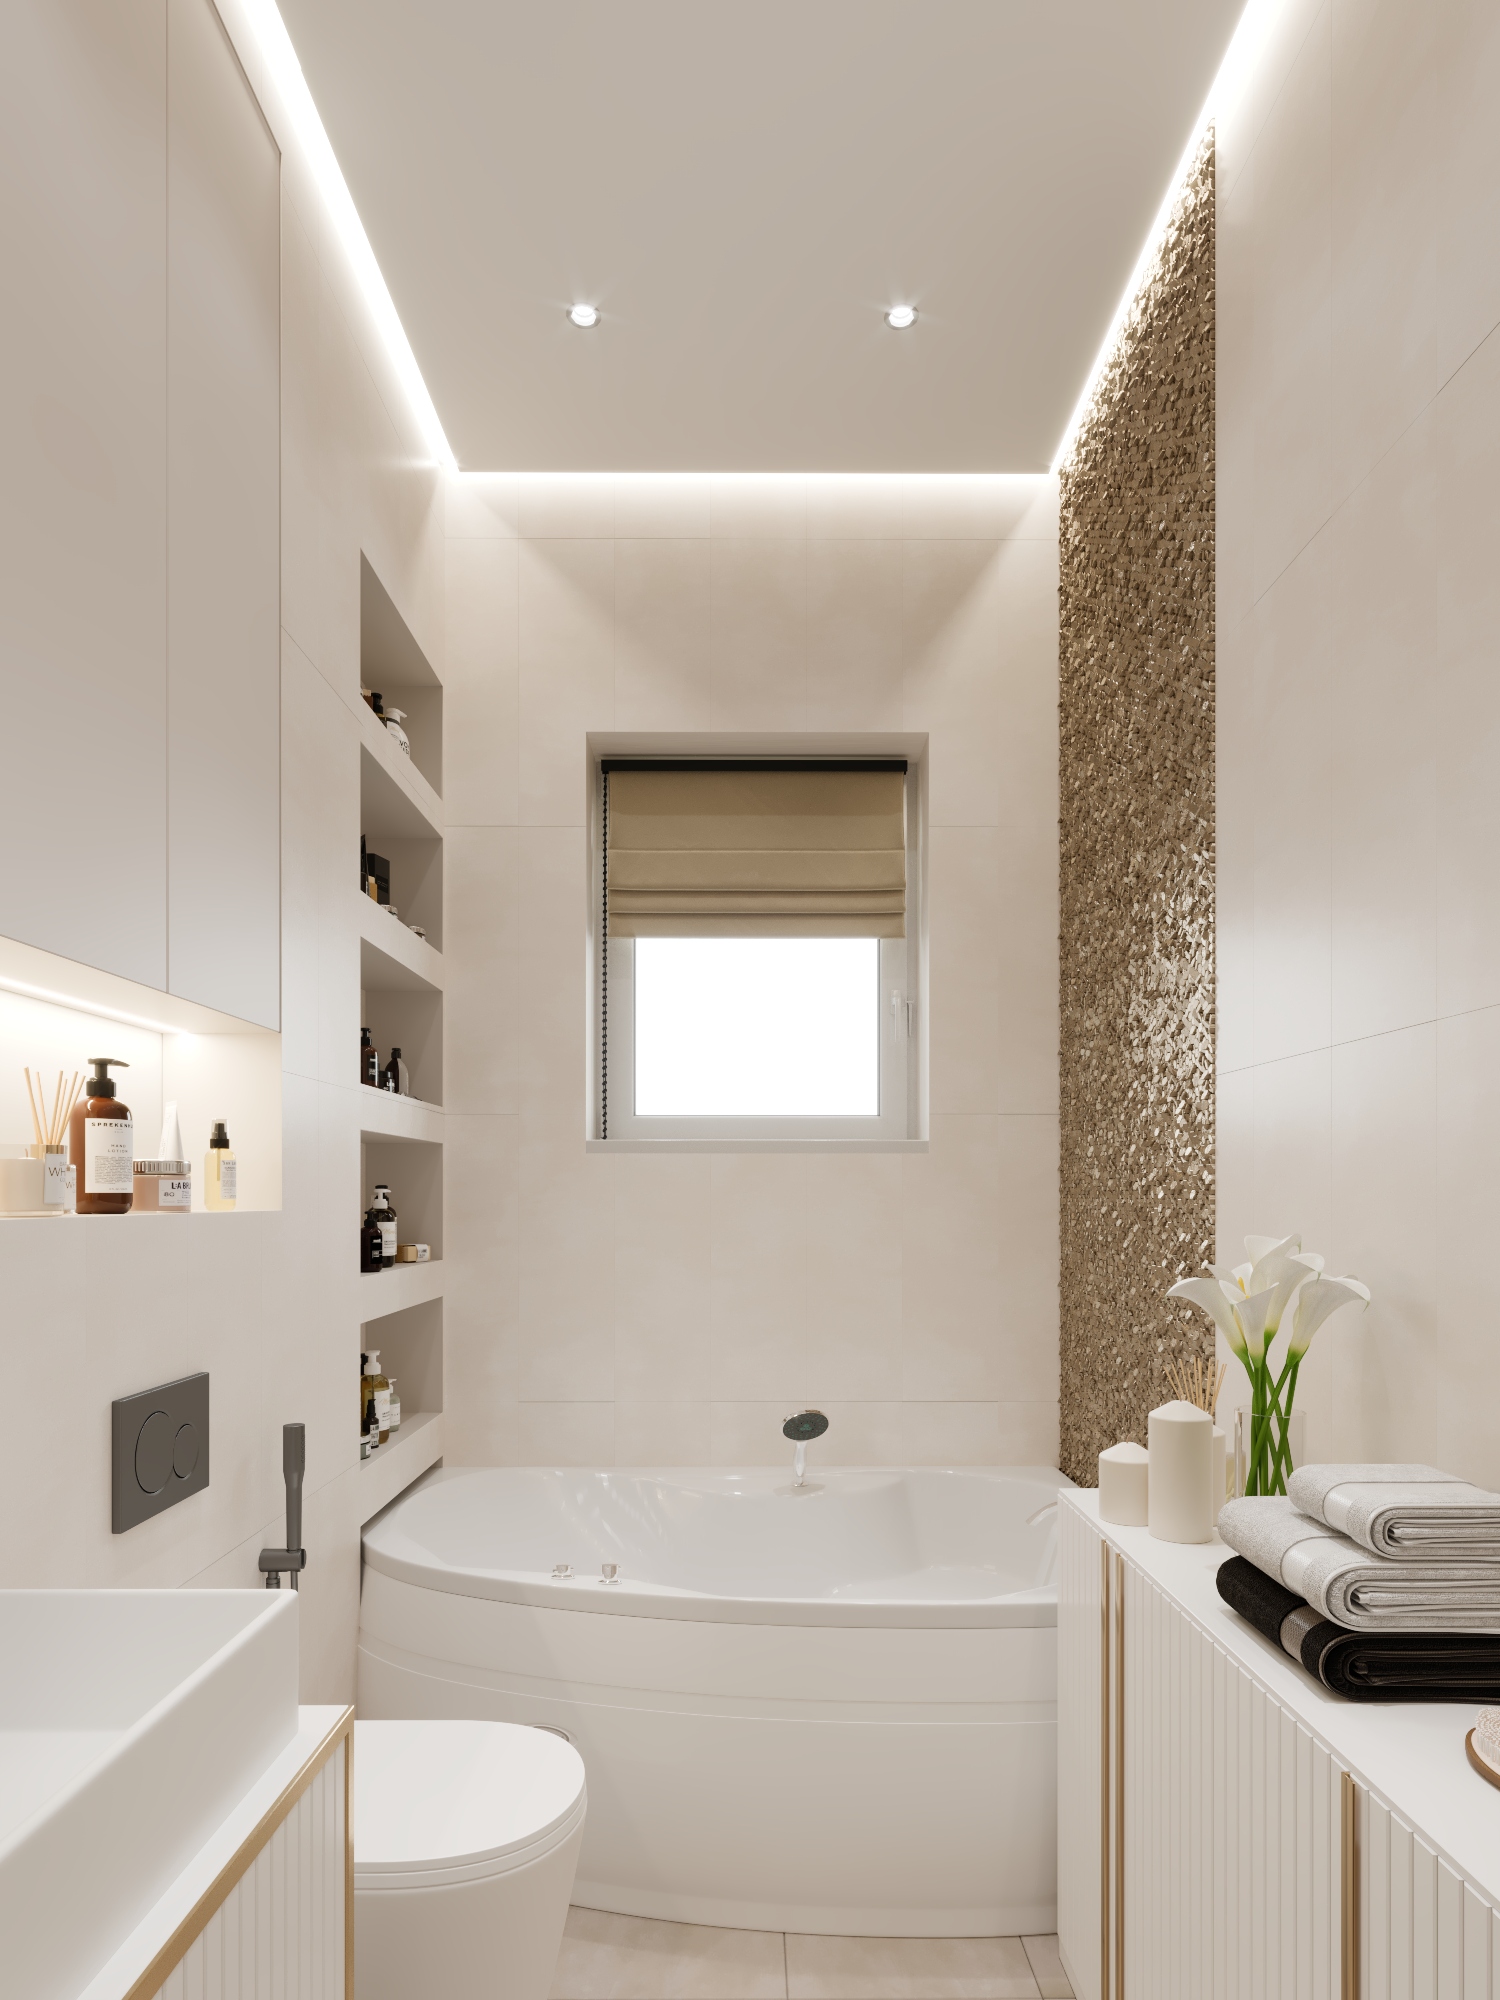 Фото № 2: Дизайн ванной комнаты с джакузи: советы по выбору и 15 стильных вариантов